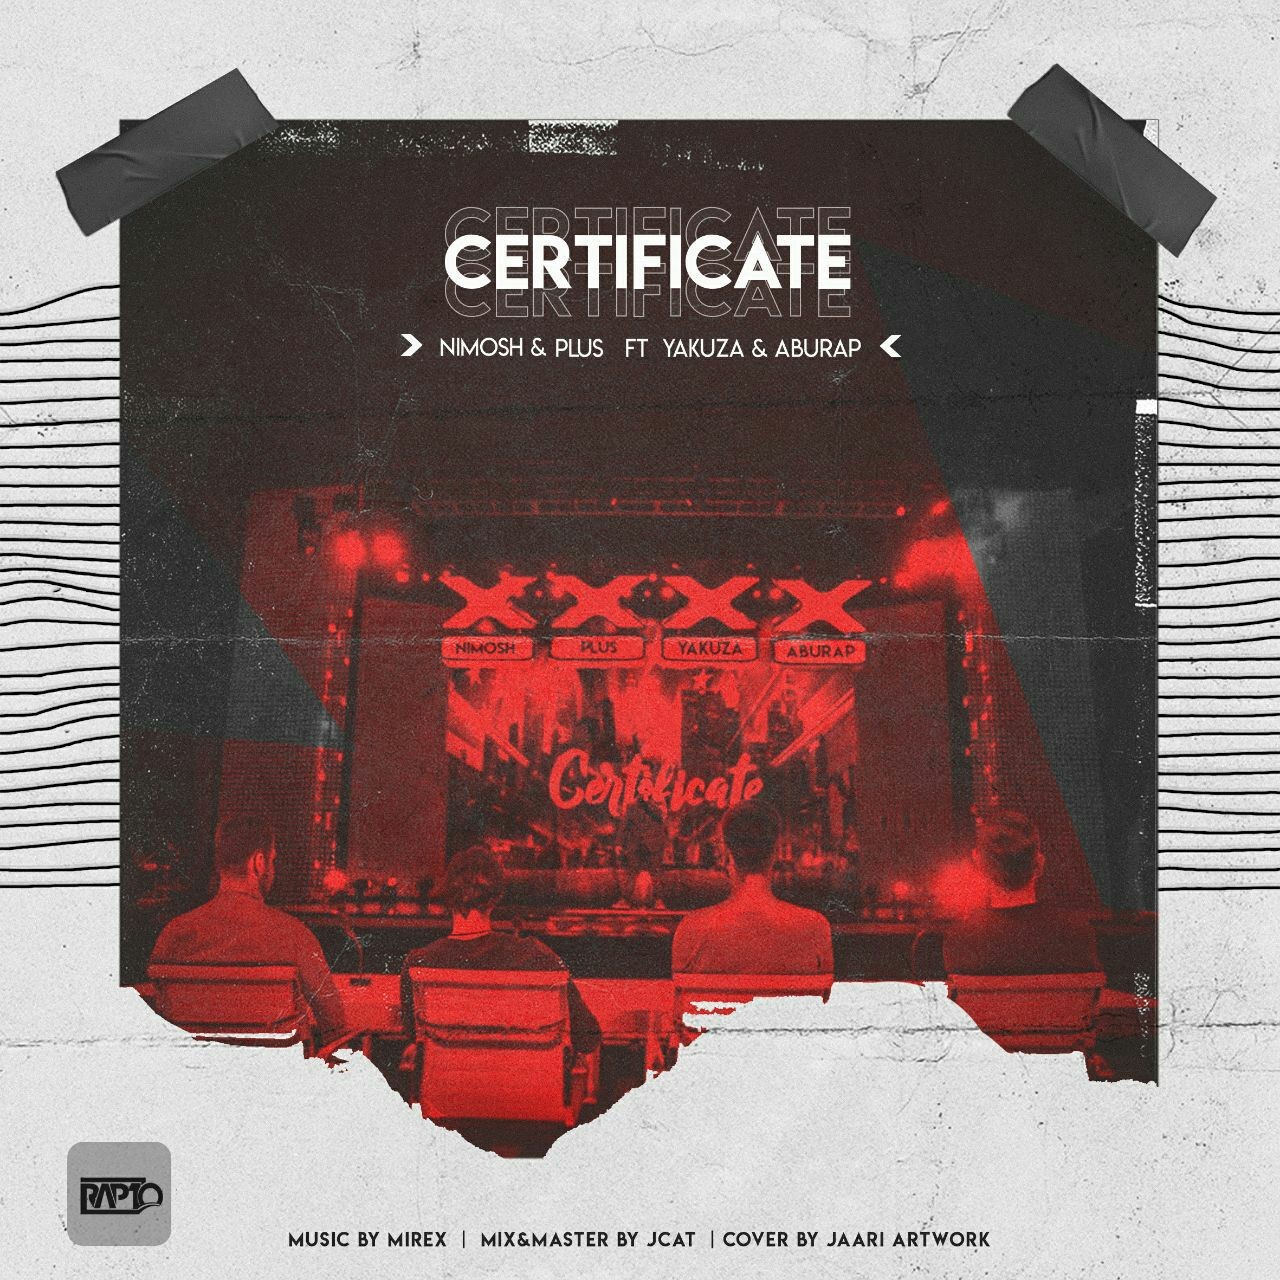  دانلود آهنگ جدید پدرام پلاس - گواهینامه | Download New Music By Pedram Plus - Certificate (feat. Nima Nimosh)